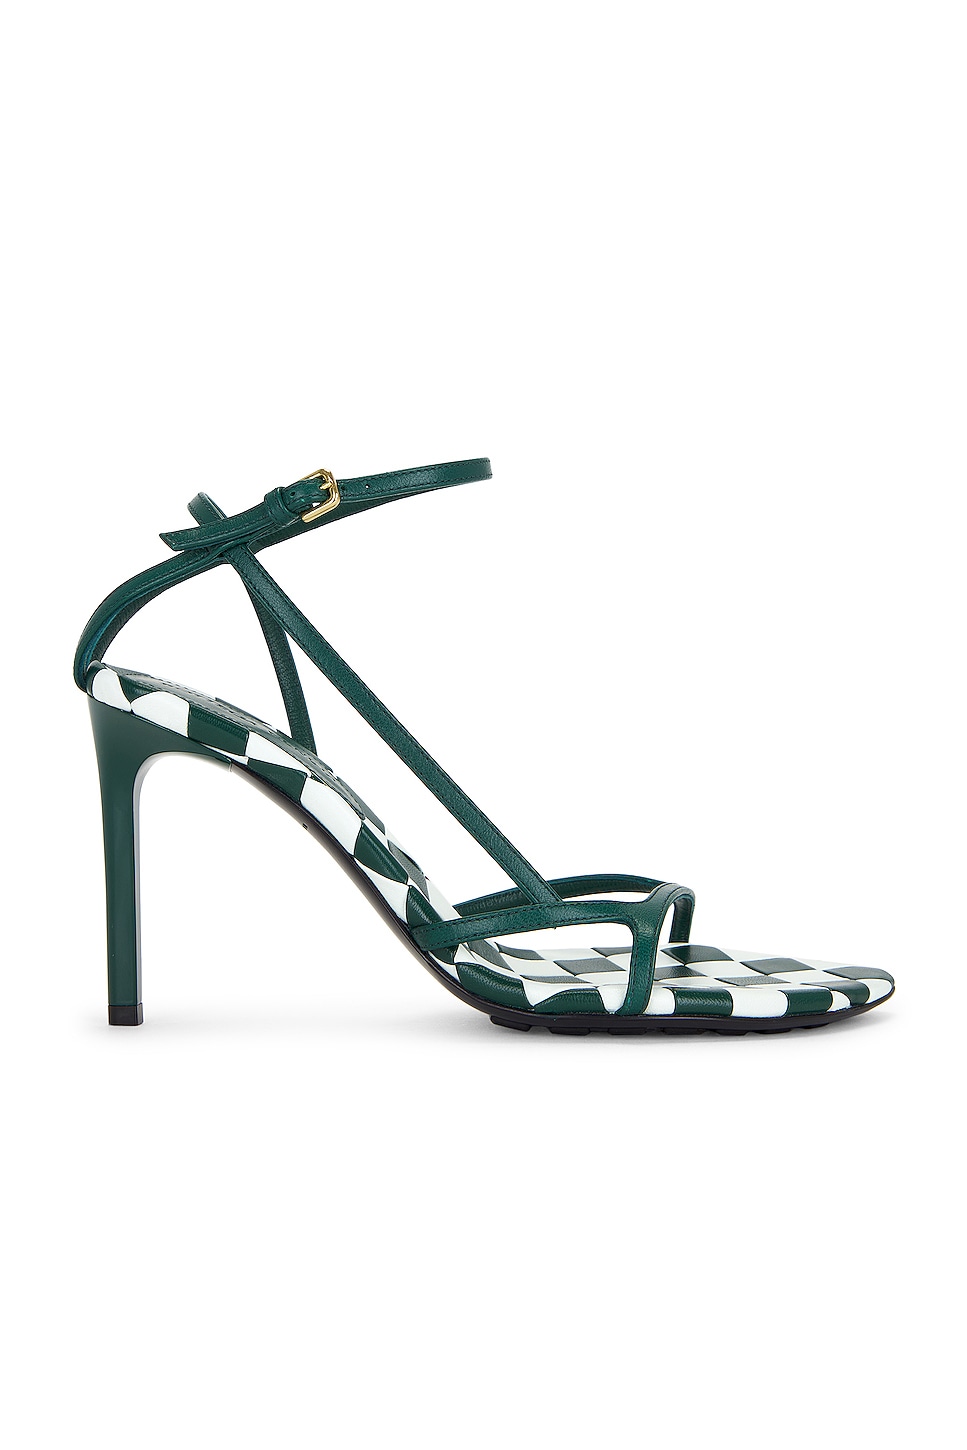 Image 1 of Bottega Veneta Leaf Ankle Strap Sandal in Glacier & Emerald